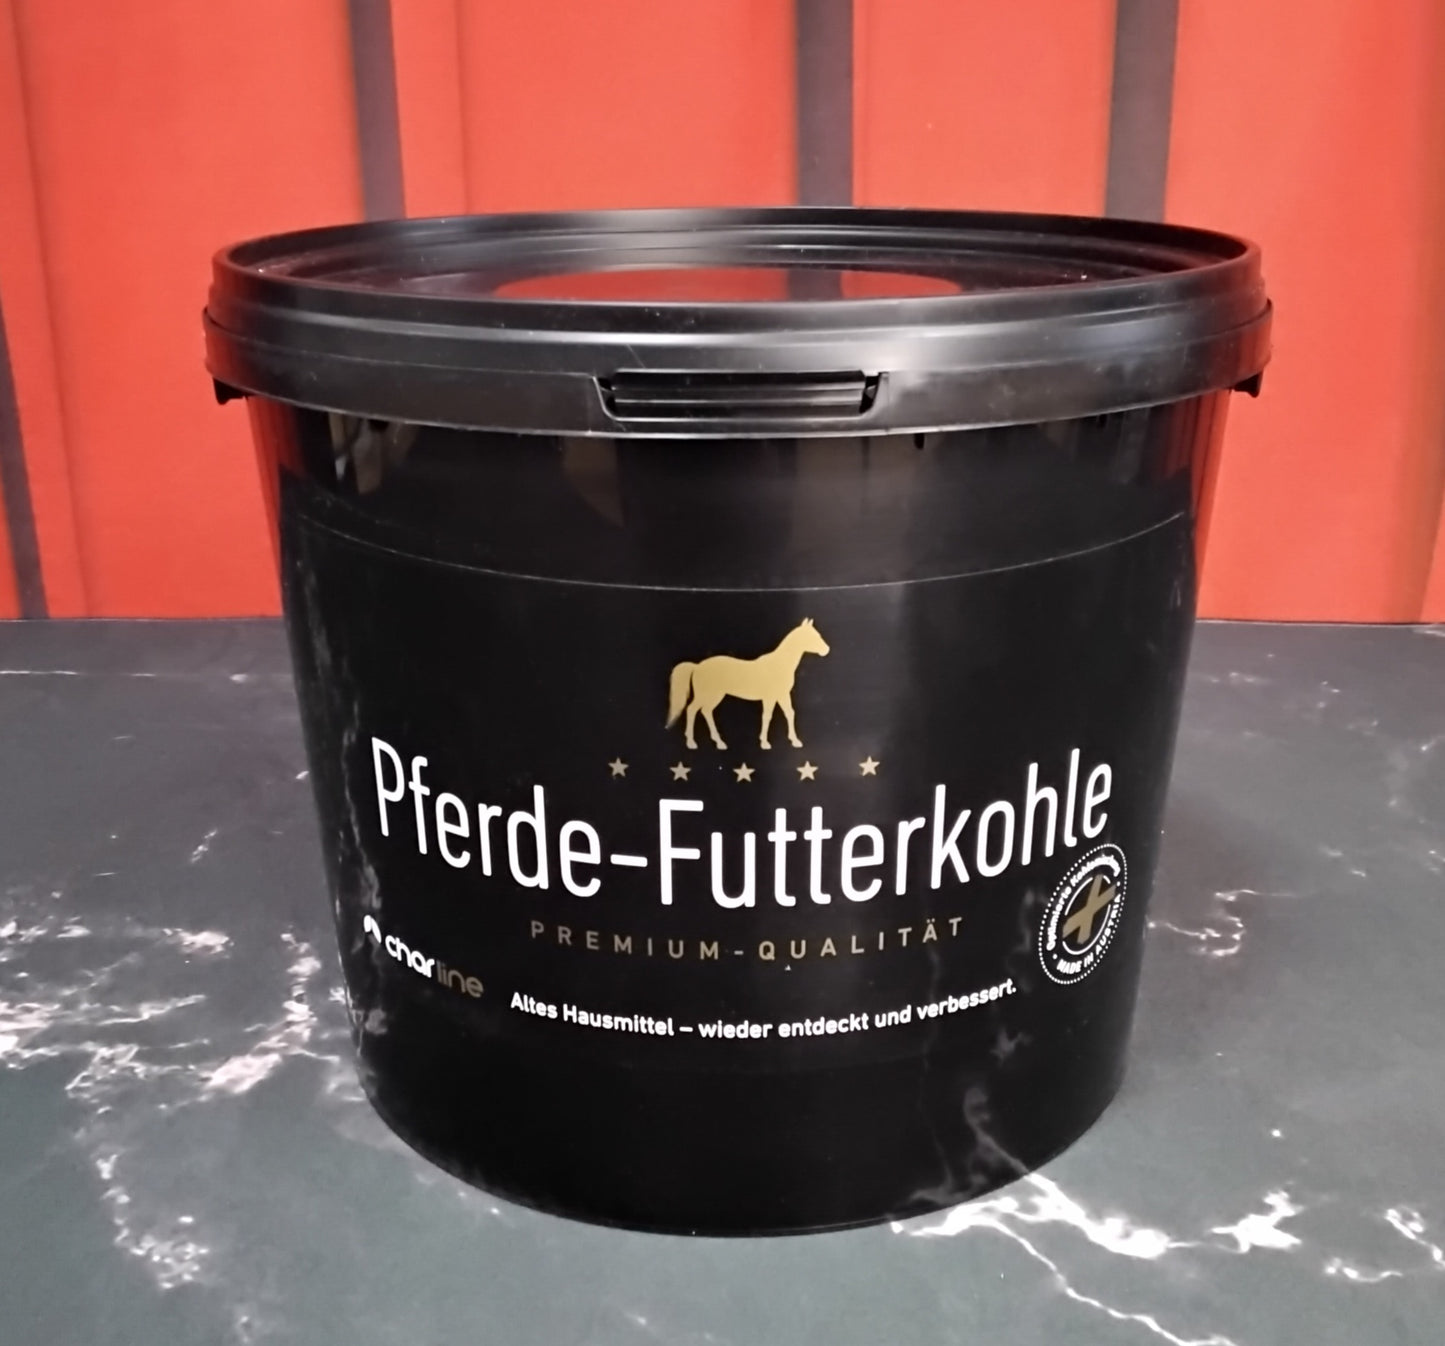 Futterkohle Pellets für Pferde - Premium Qualität 3-kg Eimer